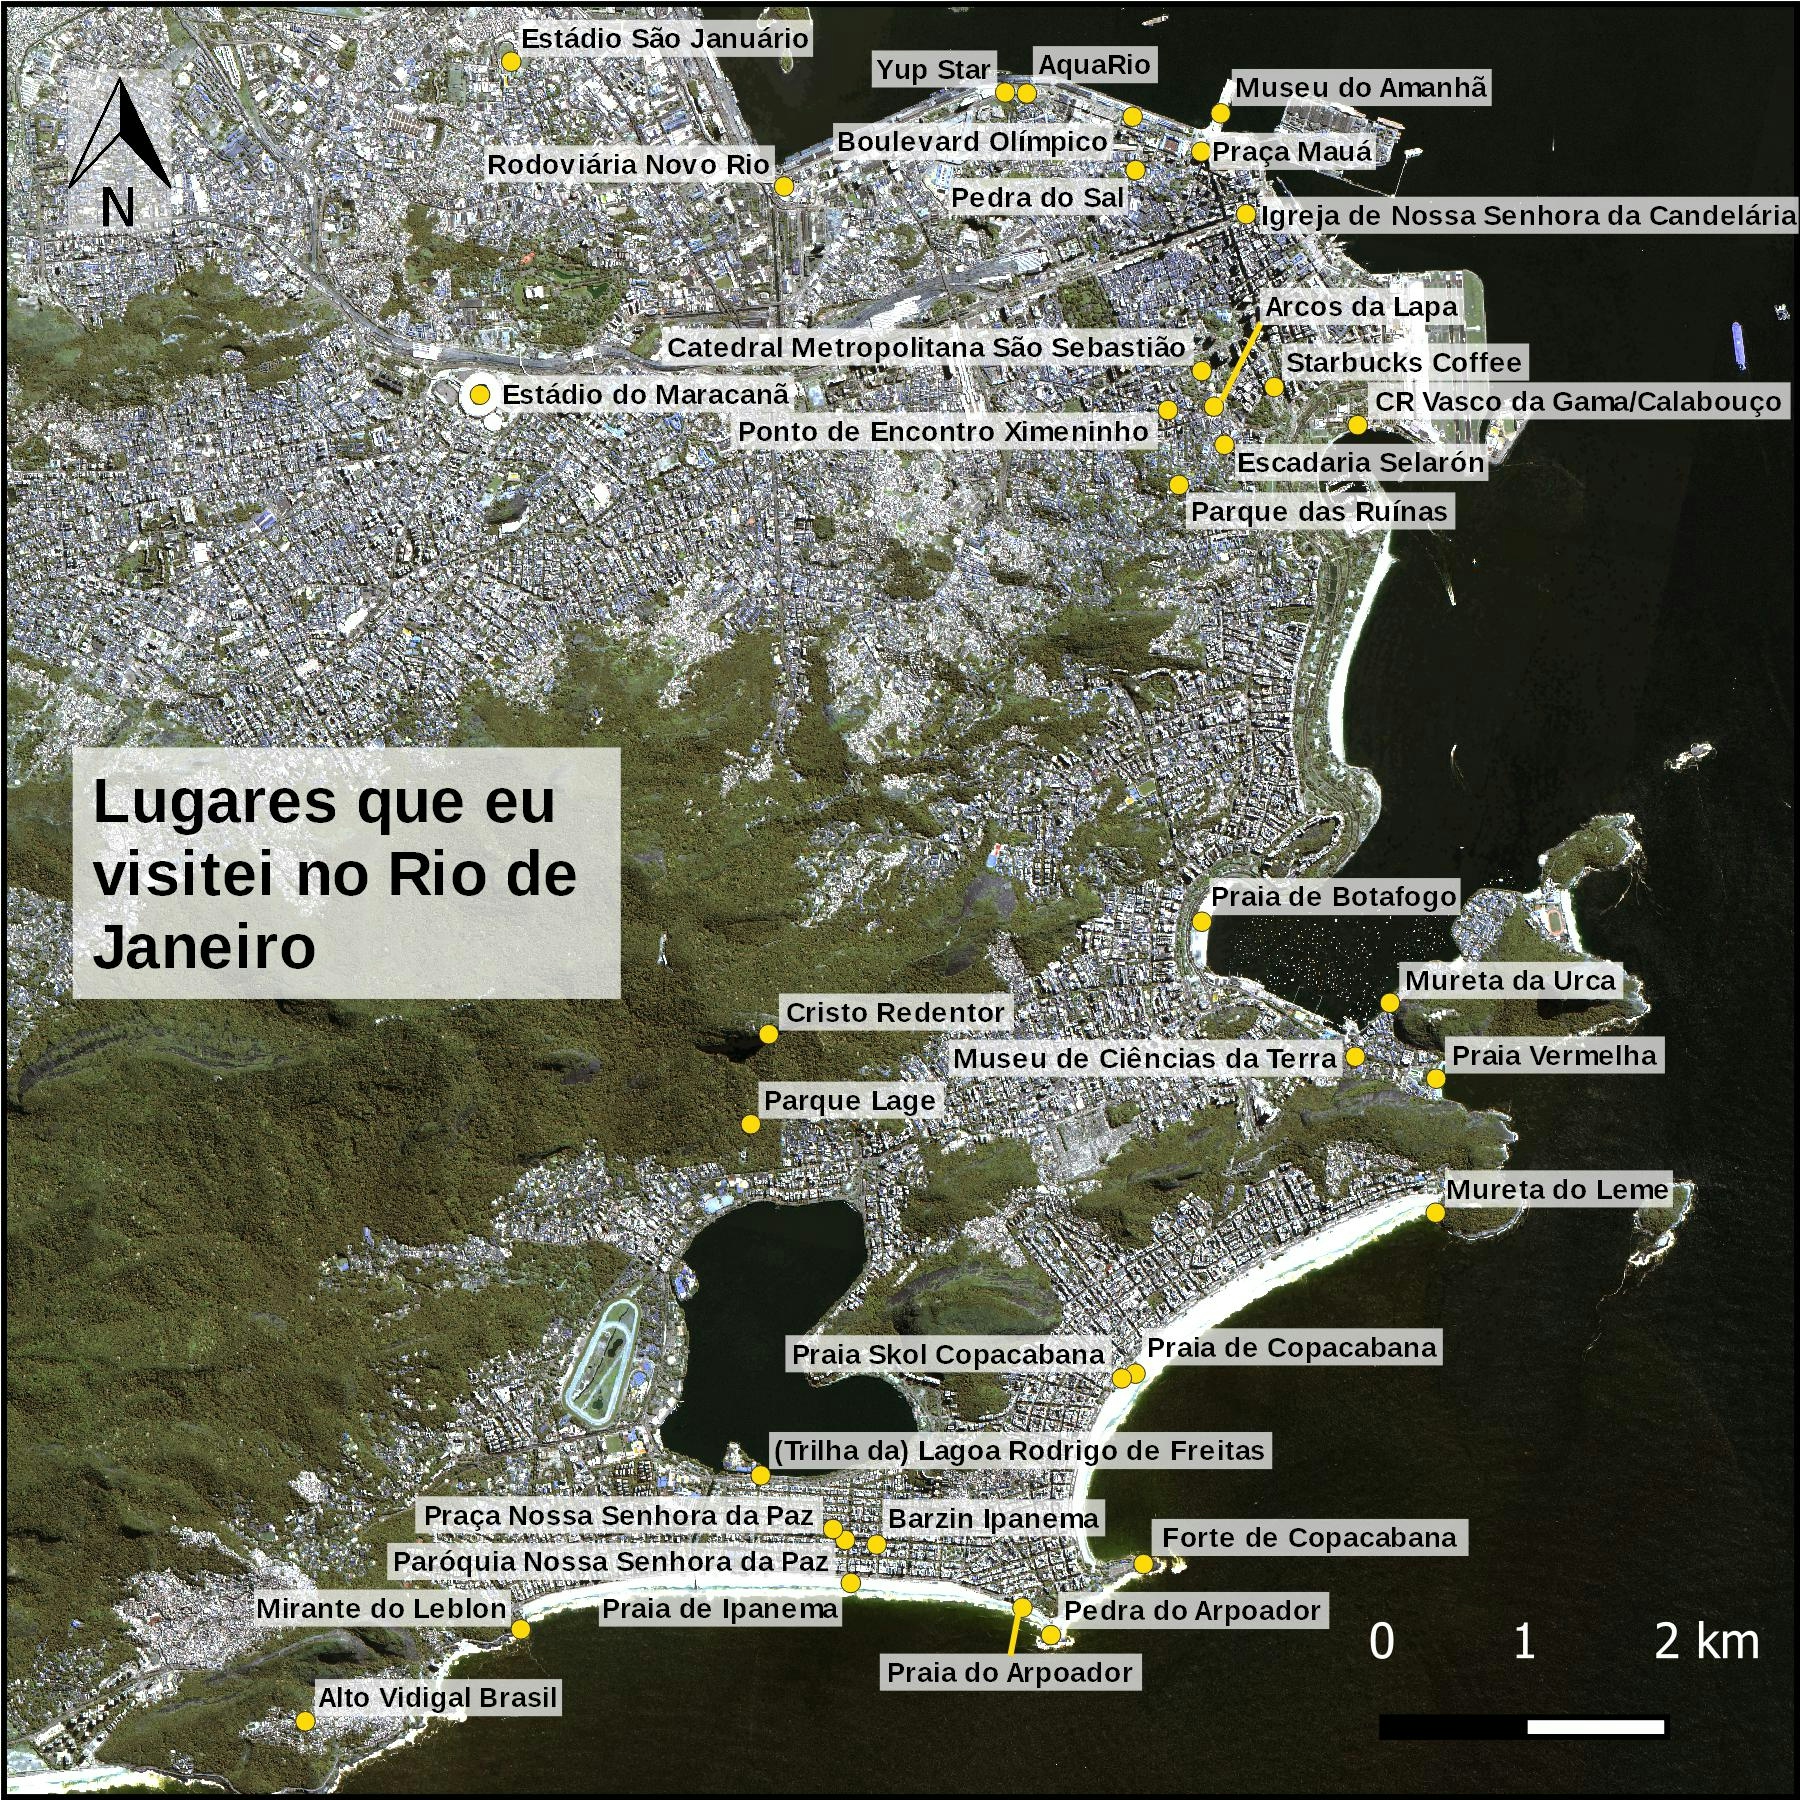 Lugares que eu visitei no Rio de Janeiro